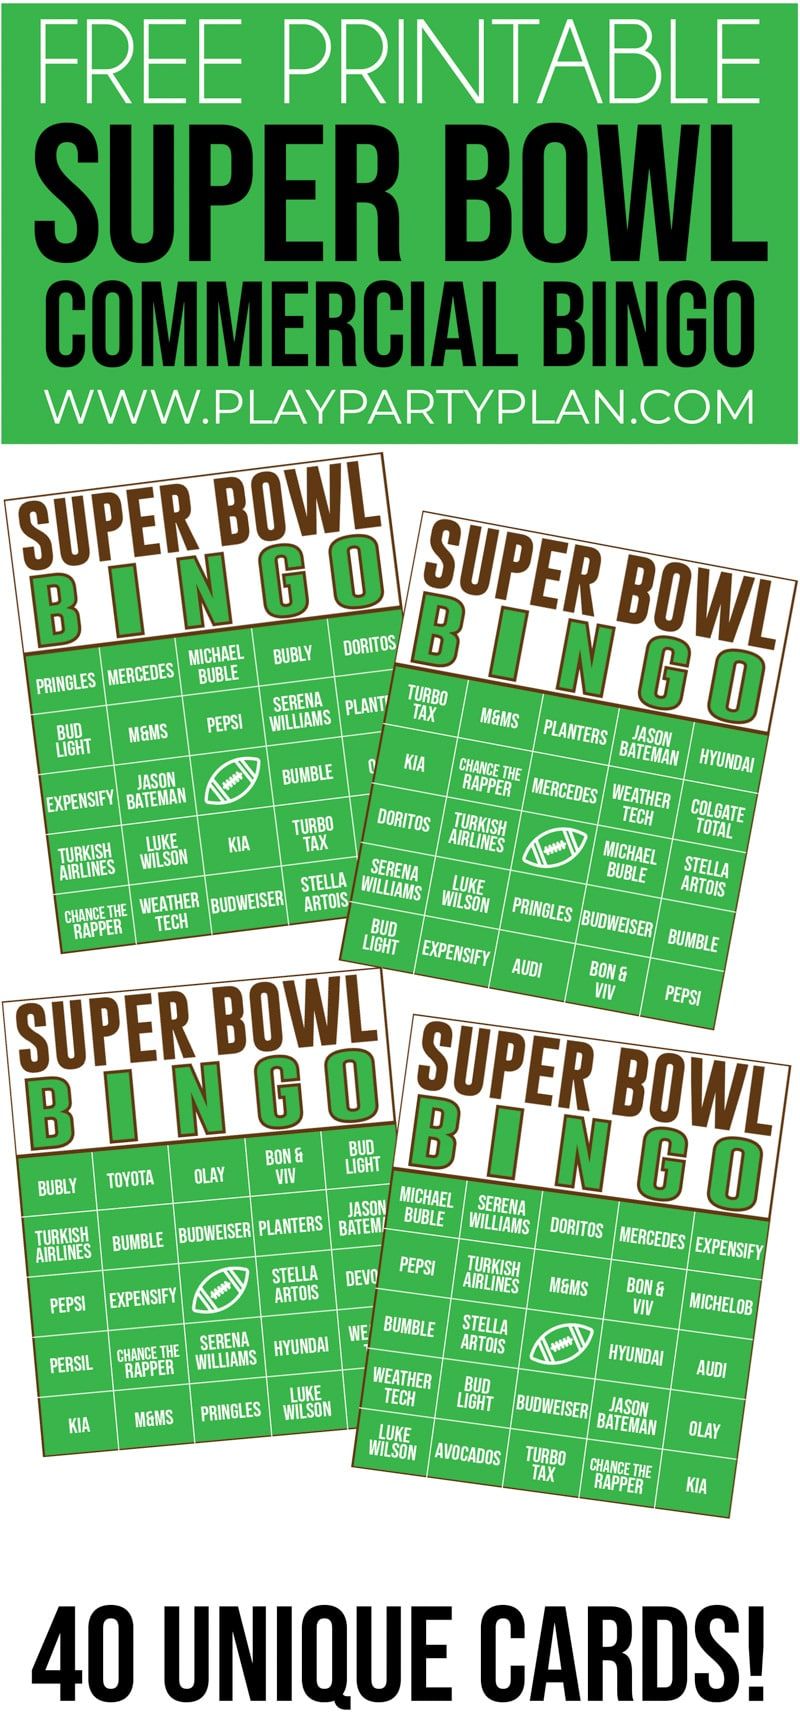 Ce bingo commercial du Super Bowl est l